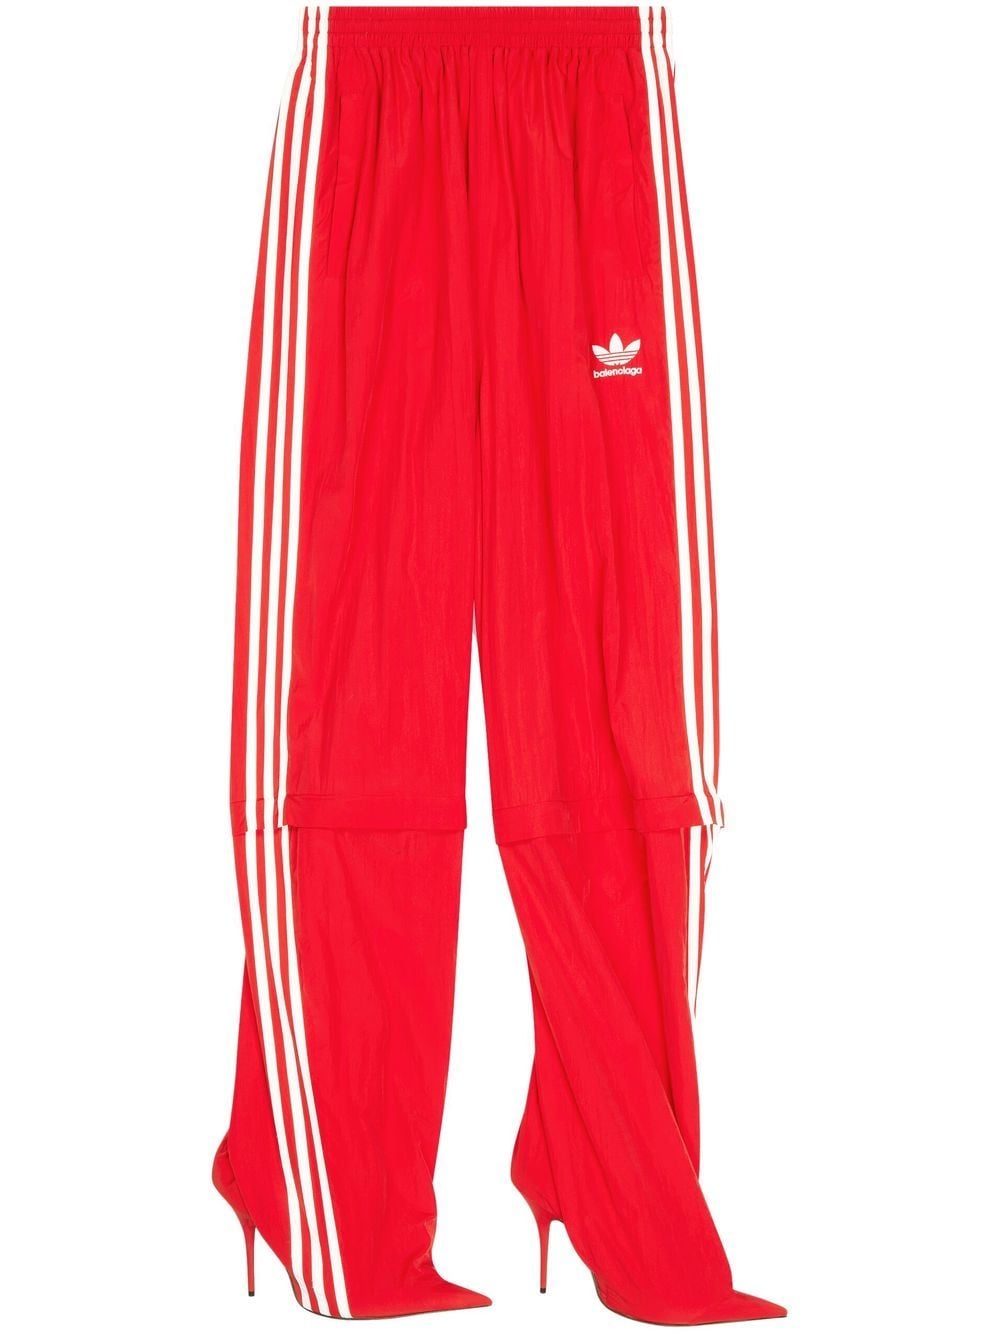 Balenciaga x adidas Pantashoes track pants - Red